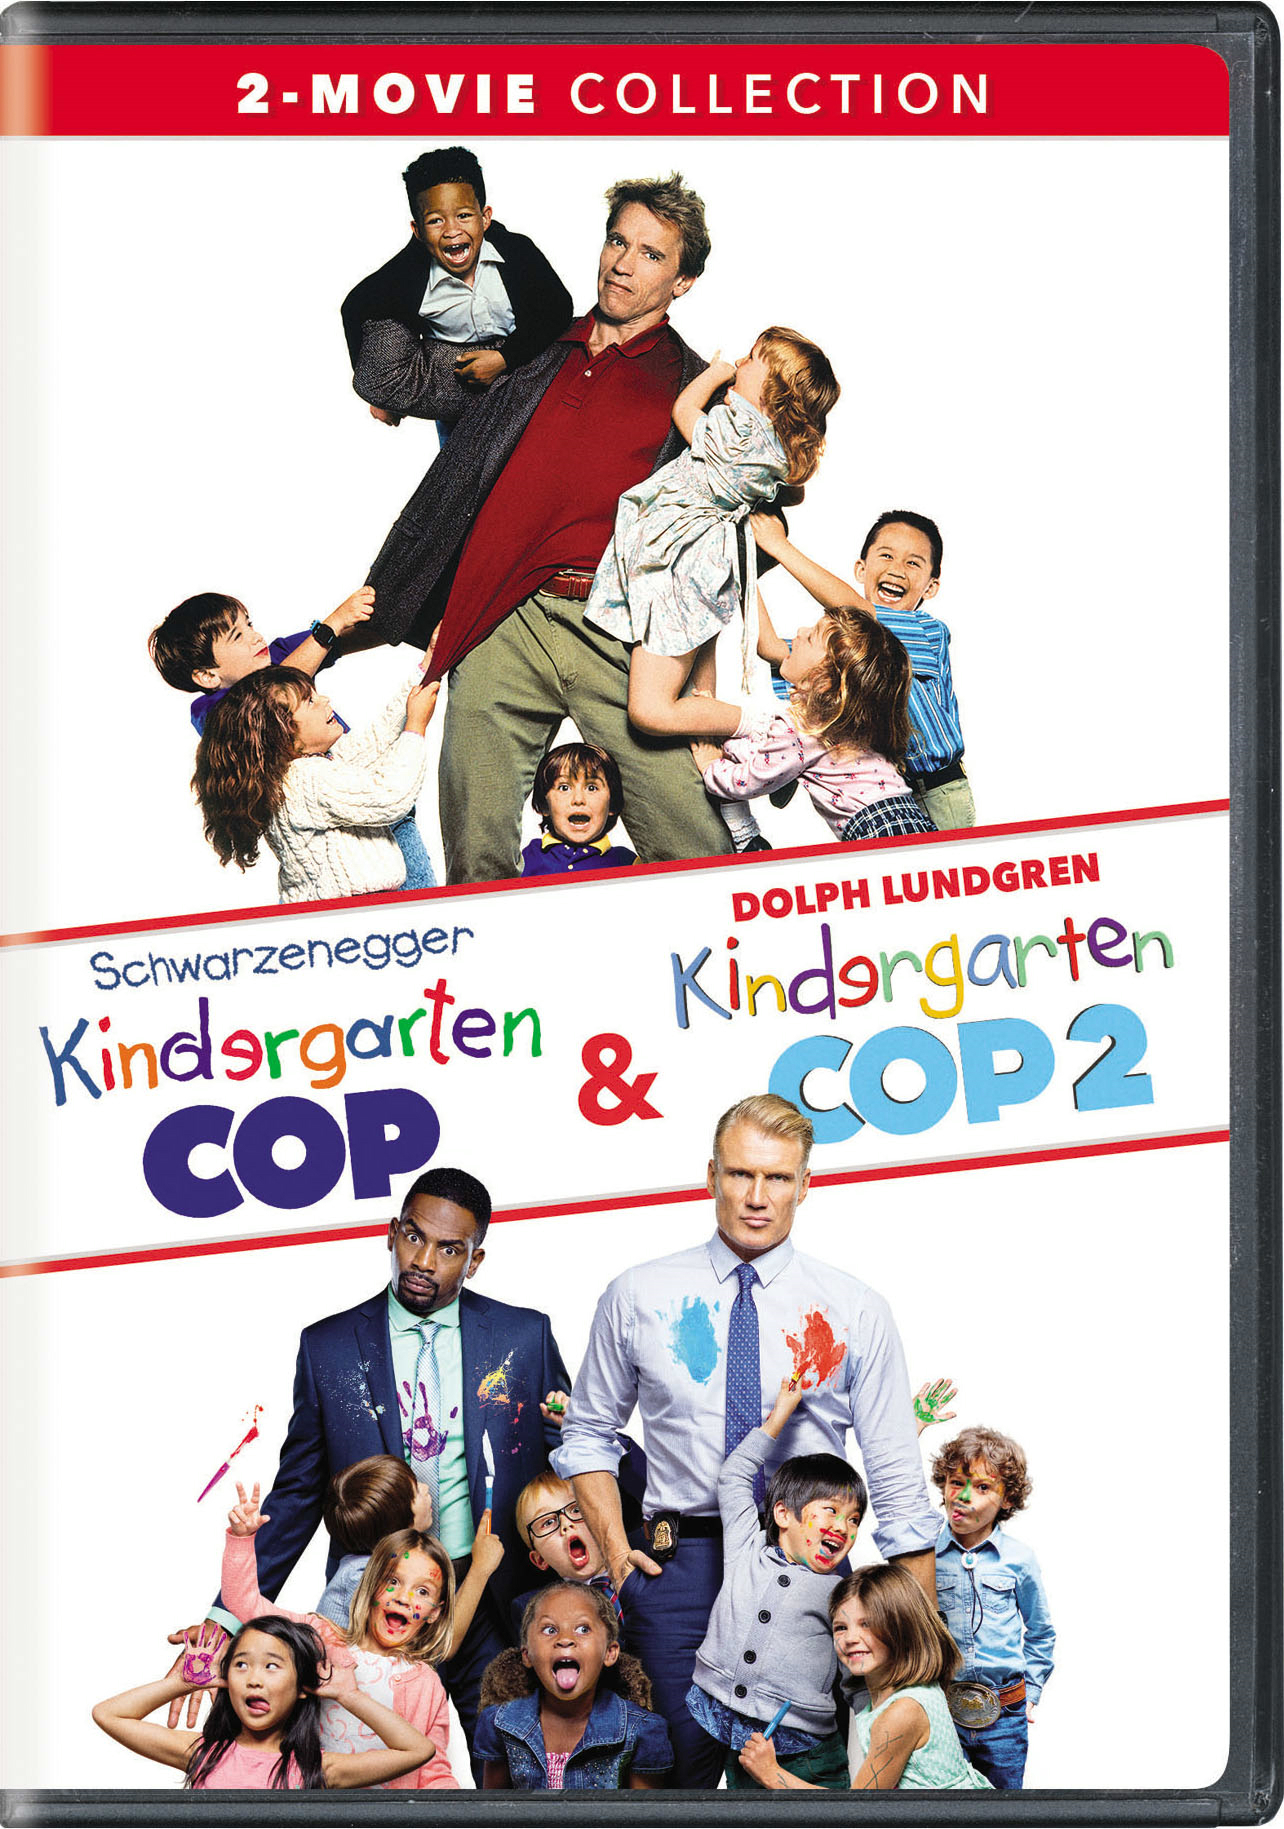 Kindergarten Cop/Kindergarten Cop 2 - DVD [ 2016 ] - Comedy Movies on DVD